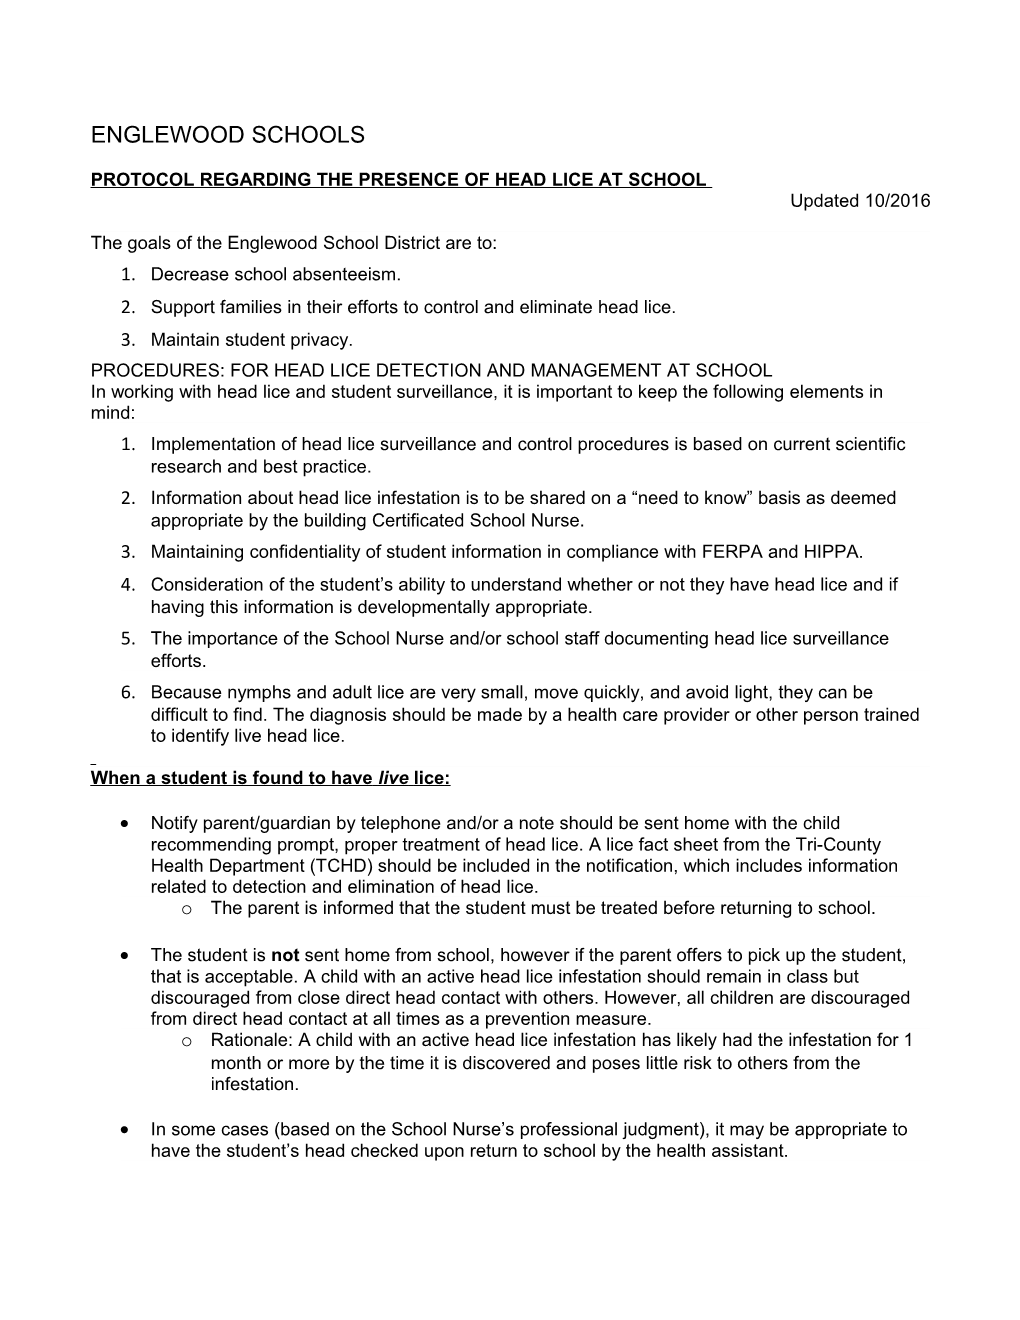 Protocol Regarding the Presence of Head Lice at School